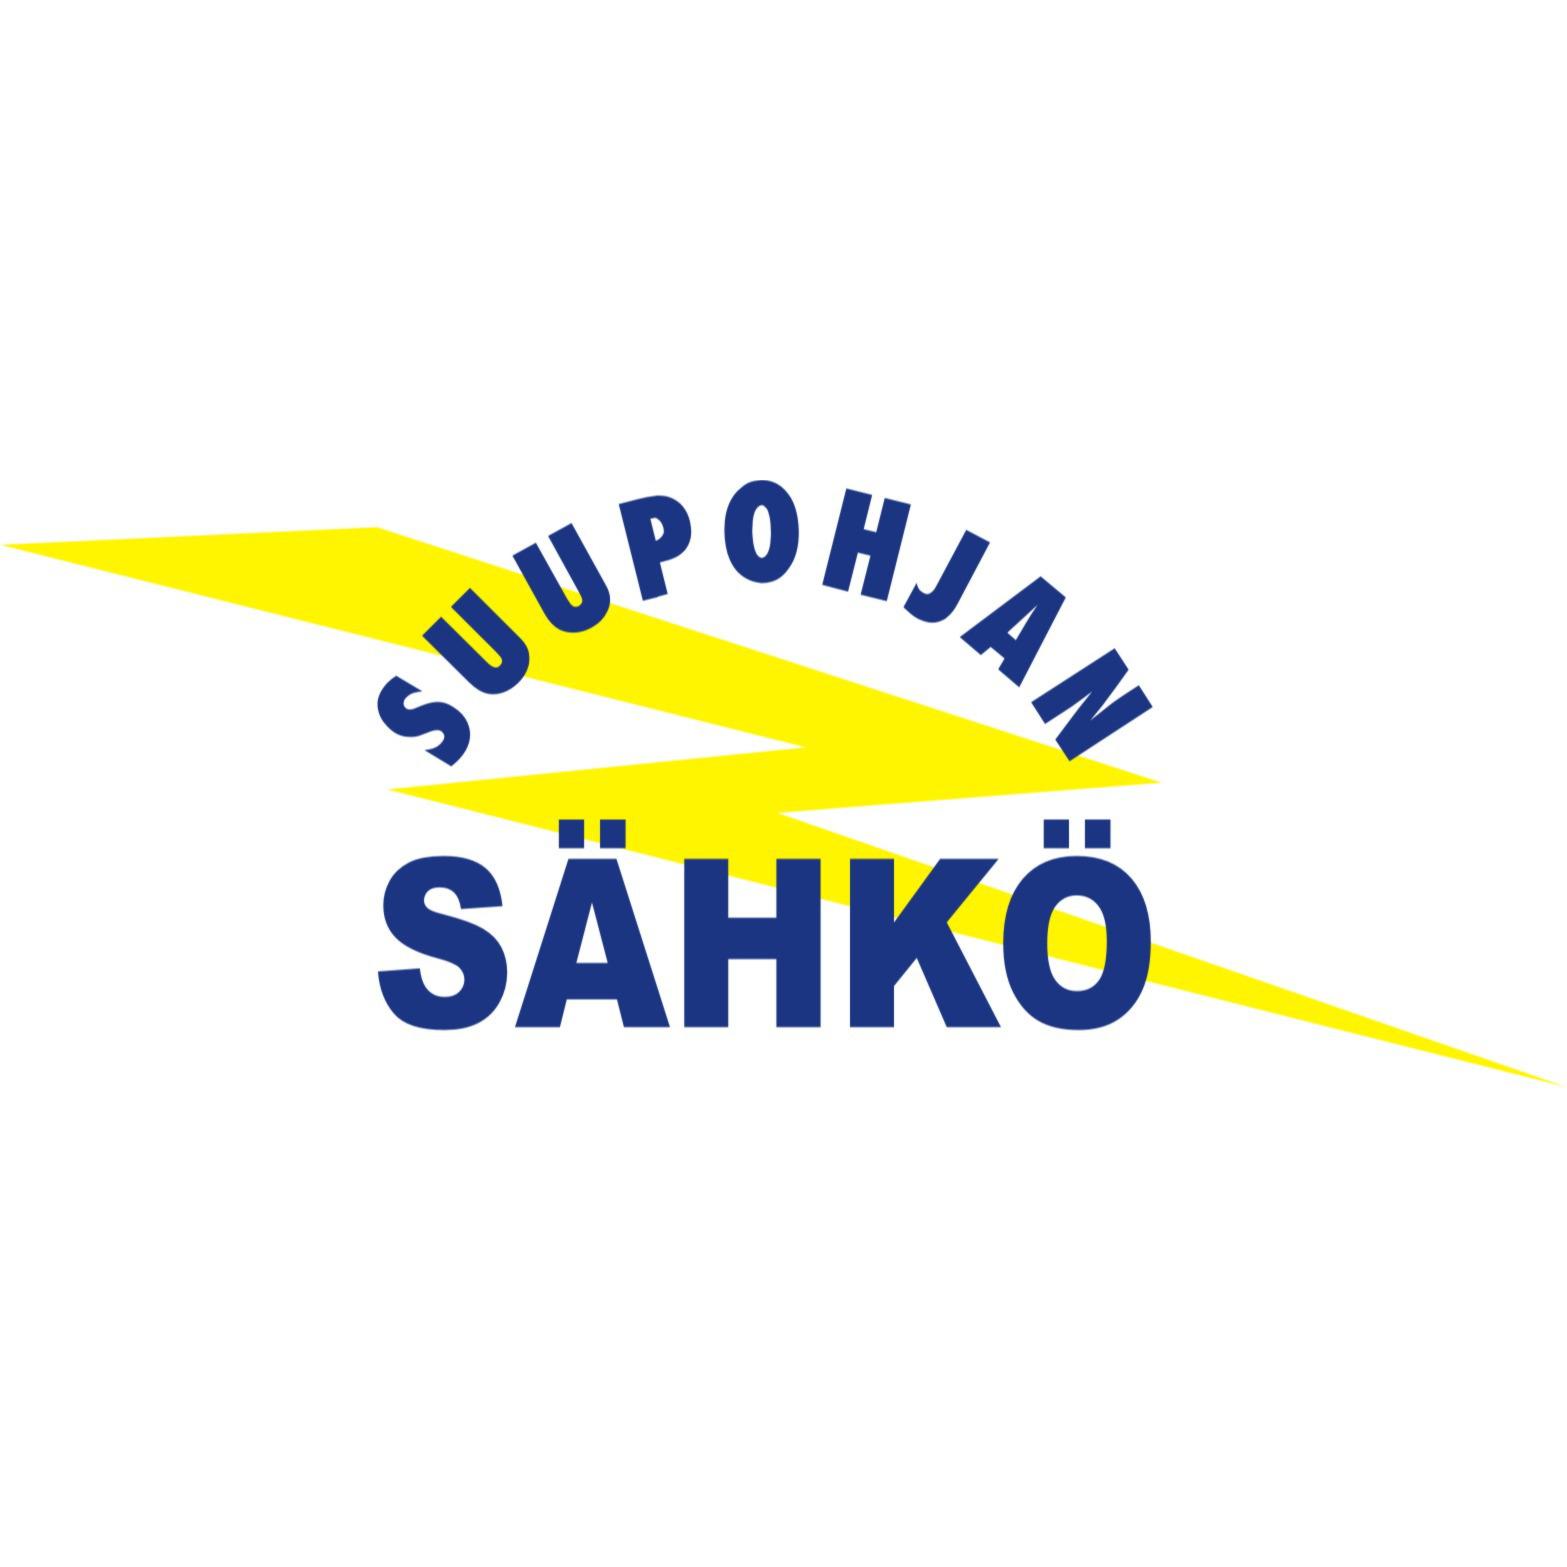 Suupohjan Sähkö Oy Logo